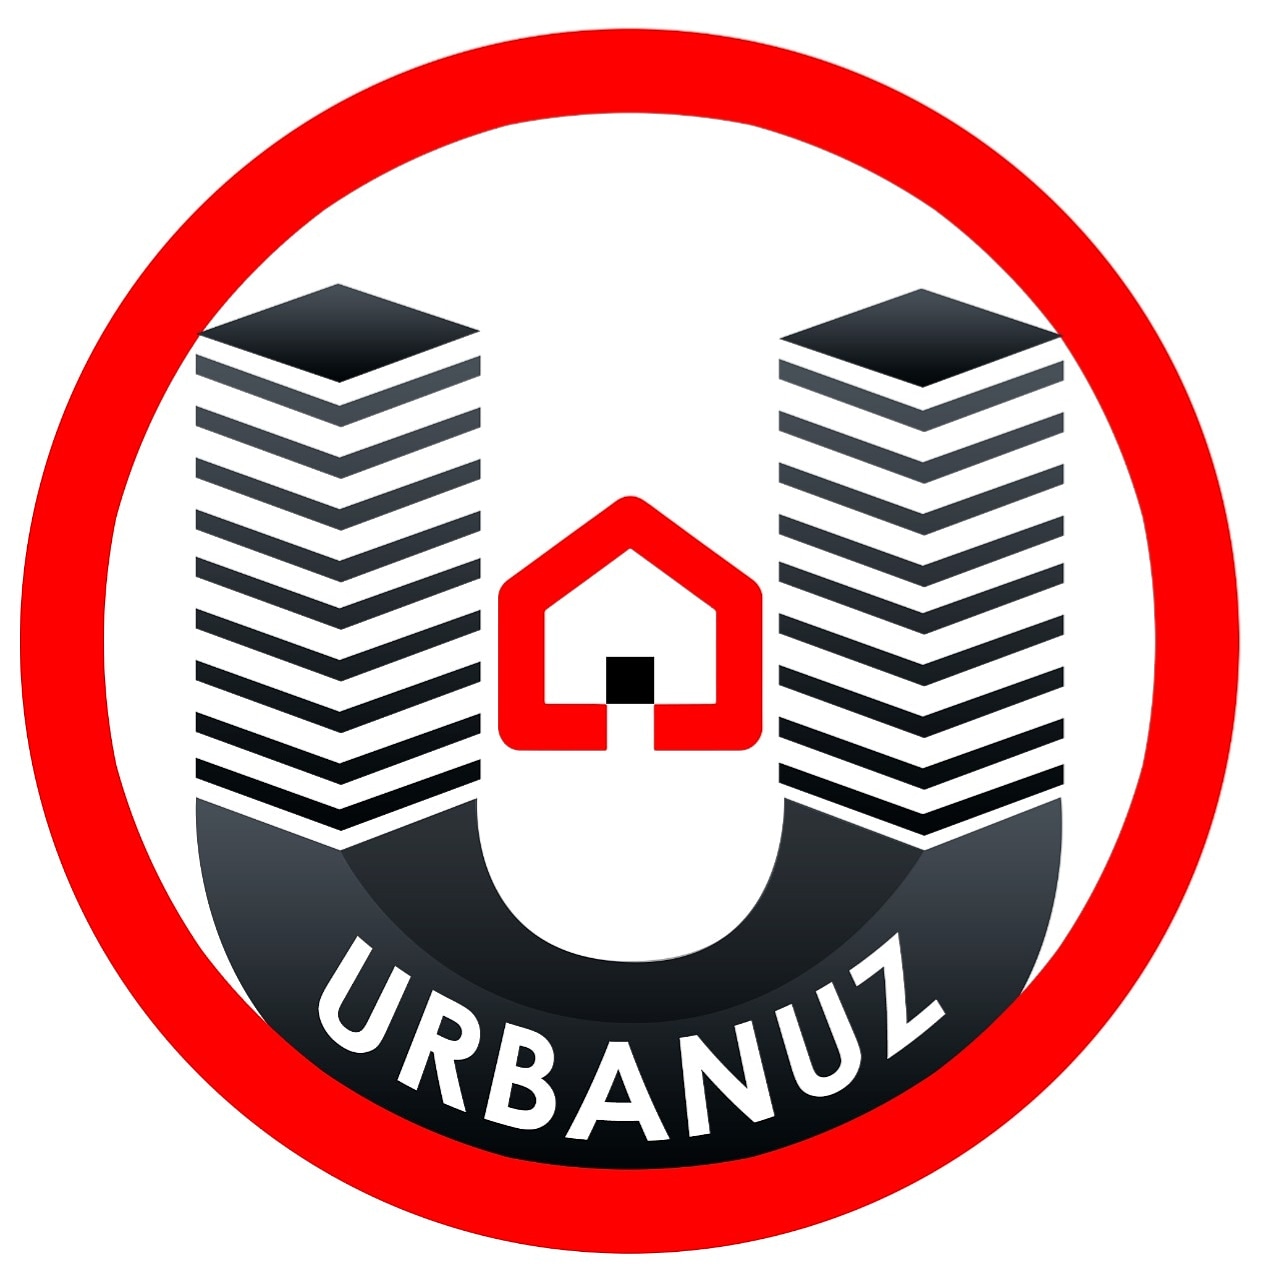 Urbanuz Bienes Raices